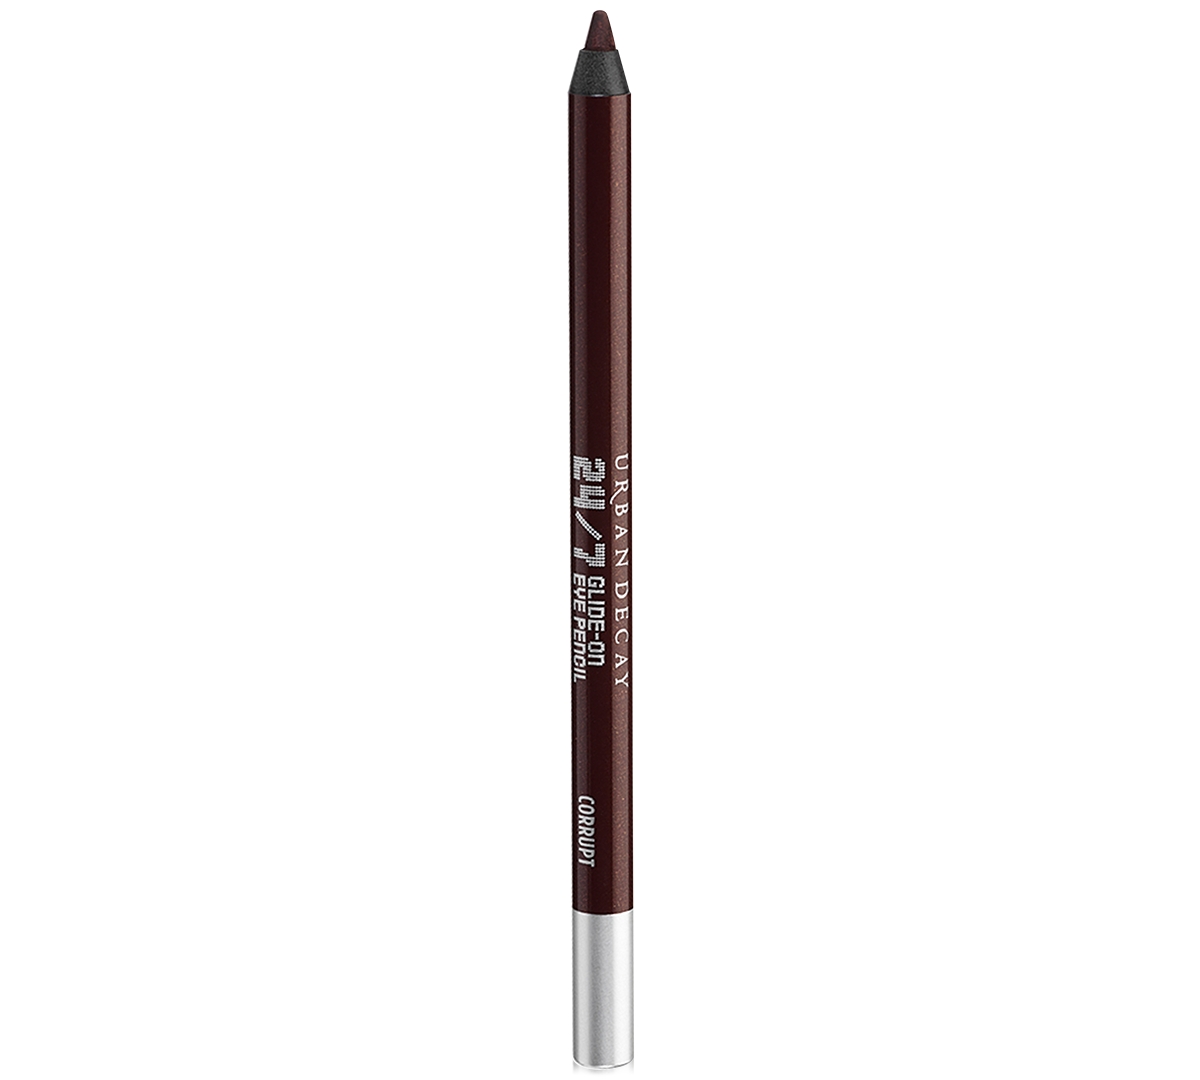 Urban Decay 24/7 Glide-on Waterproof Eyeliner Pencil In Corrupt (dark Metallic Reddish Brown Wit